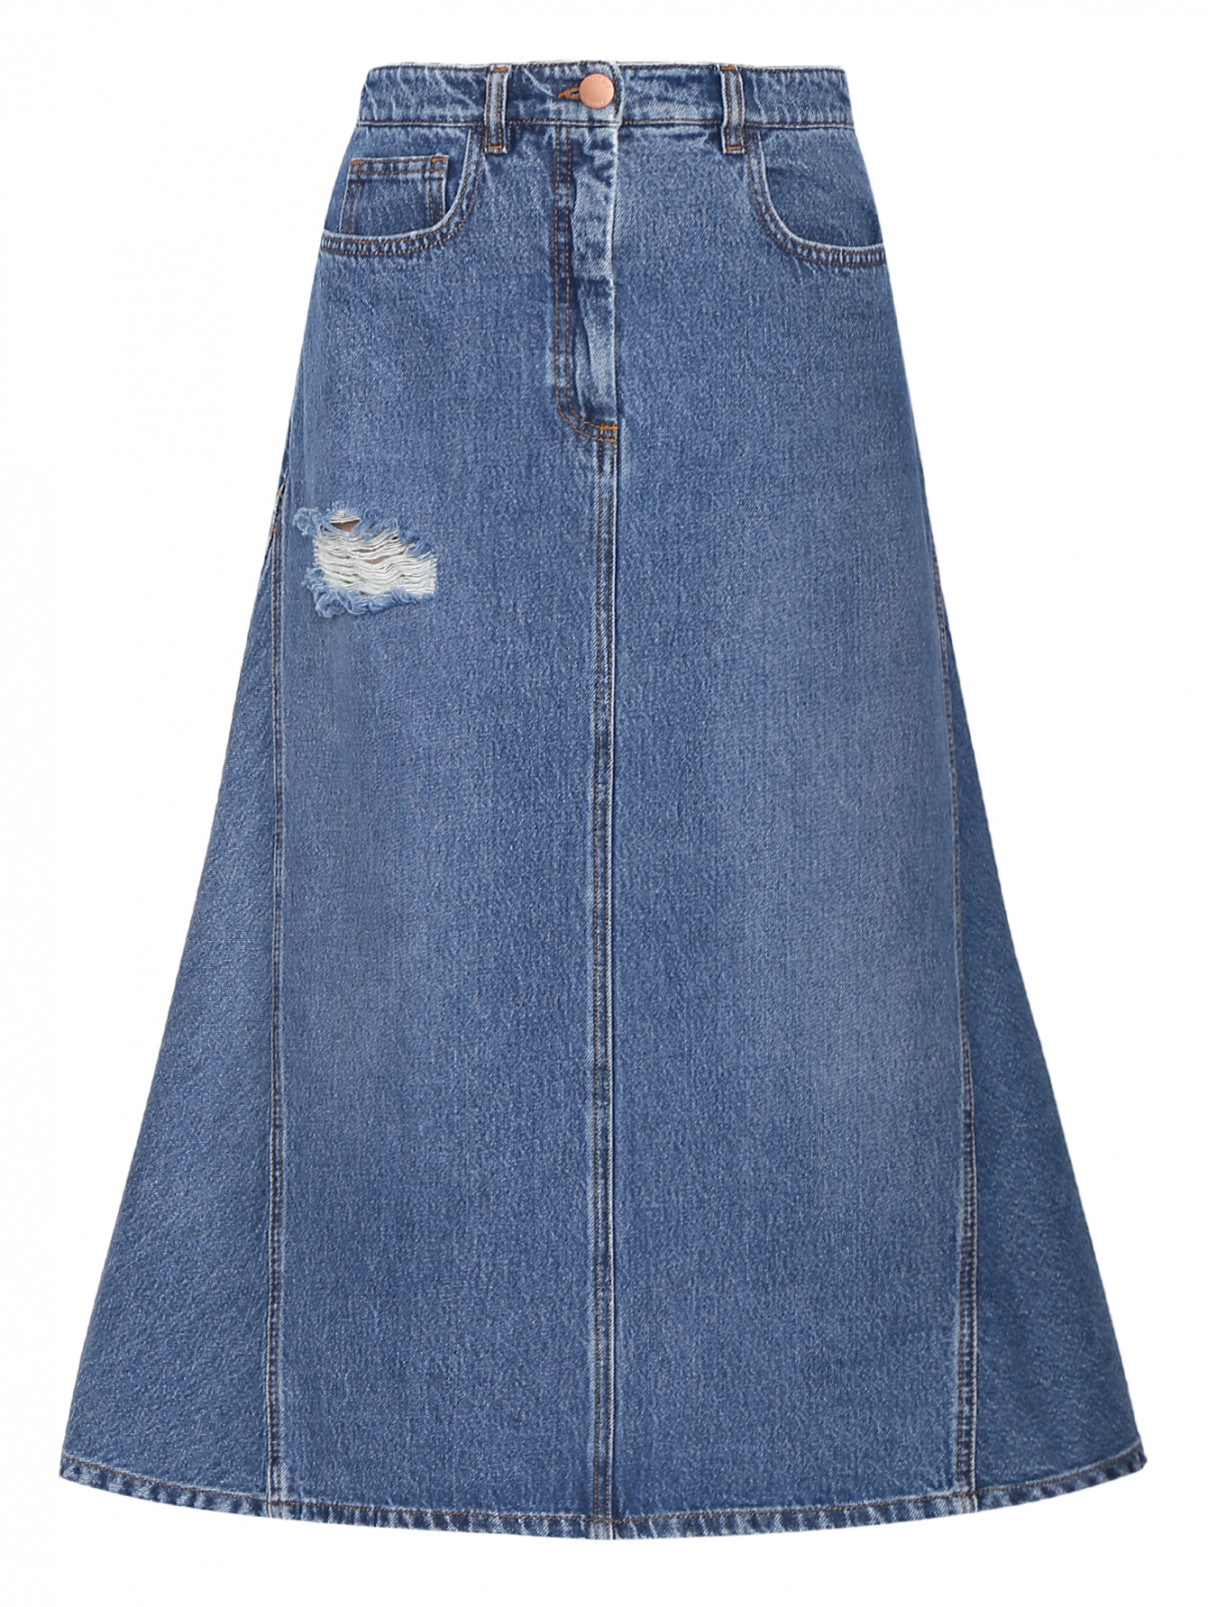 Джинсовая юбка-миди с "рваным эффектом" Moschino Boutique  –  Общий вид  – Цвет:  Синий